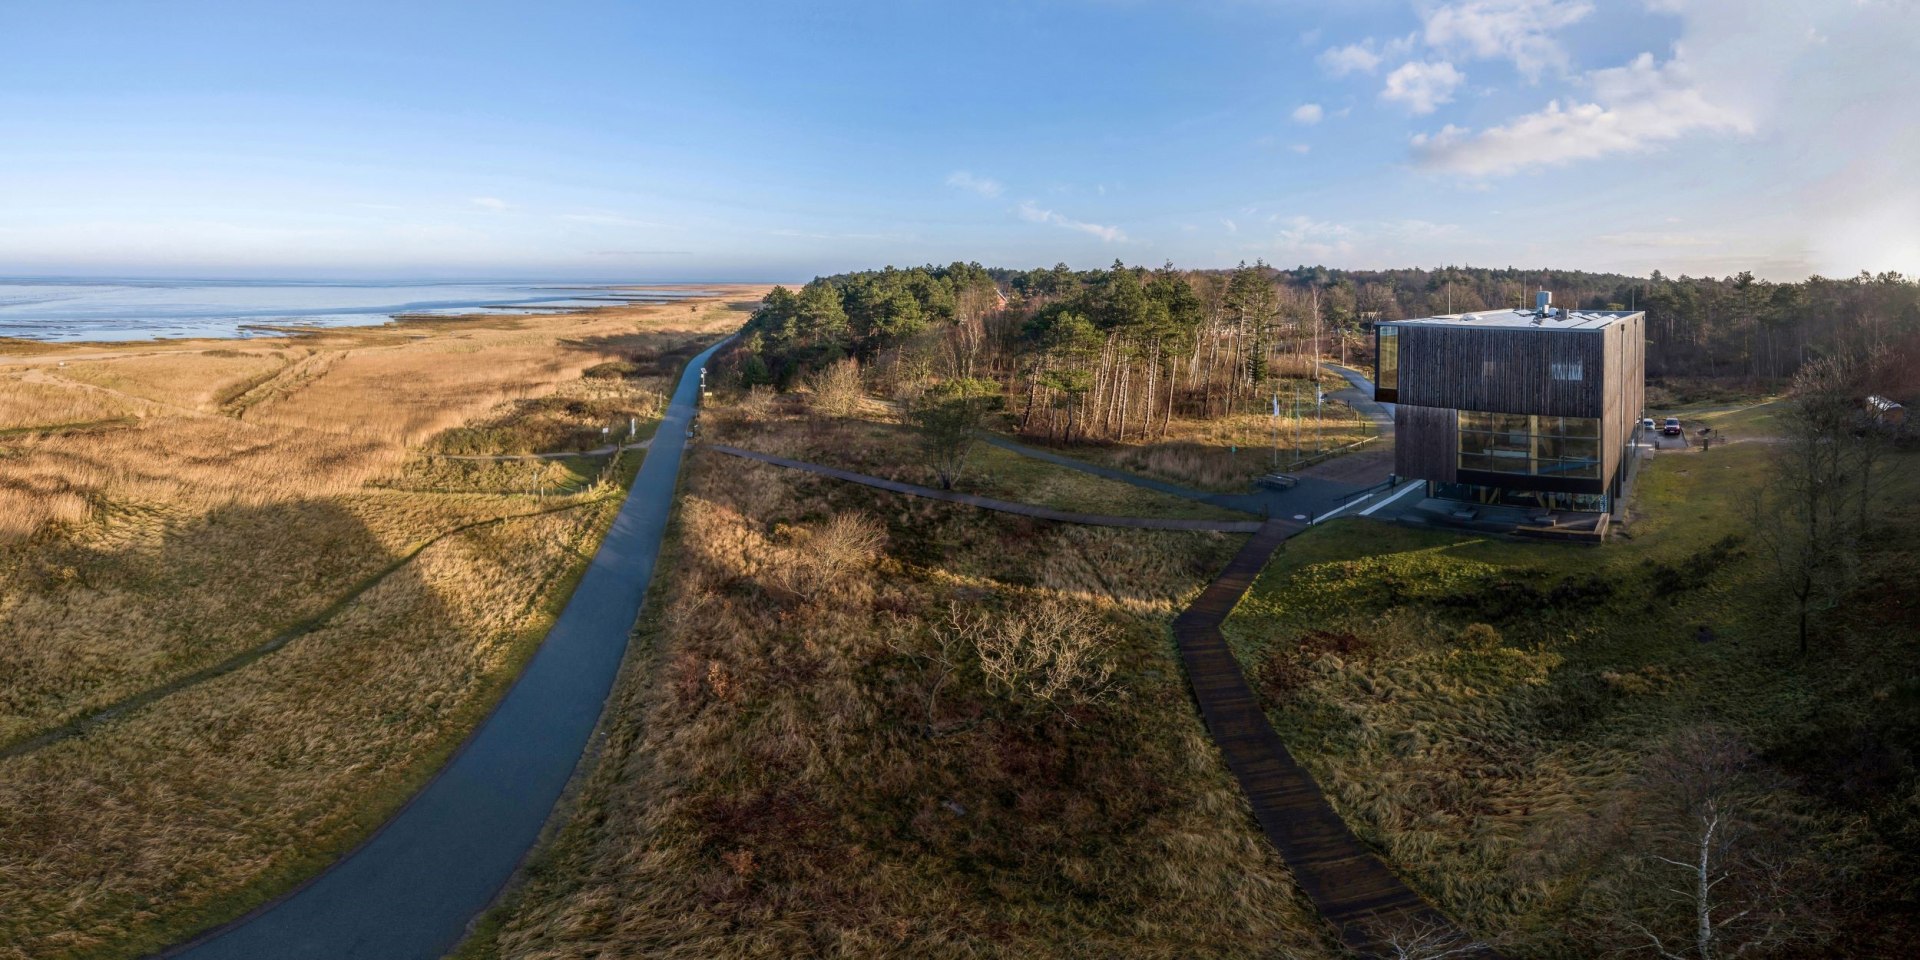 Außenansicht und Umgebung Wattenmeer-Besucherzentrum Cuxhaven, © TMN/ Burmann